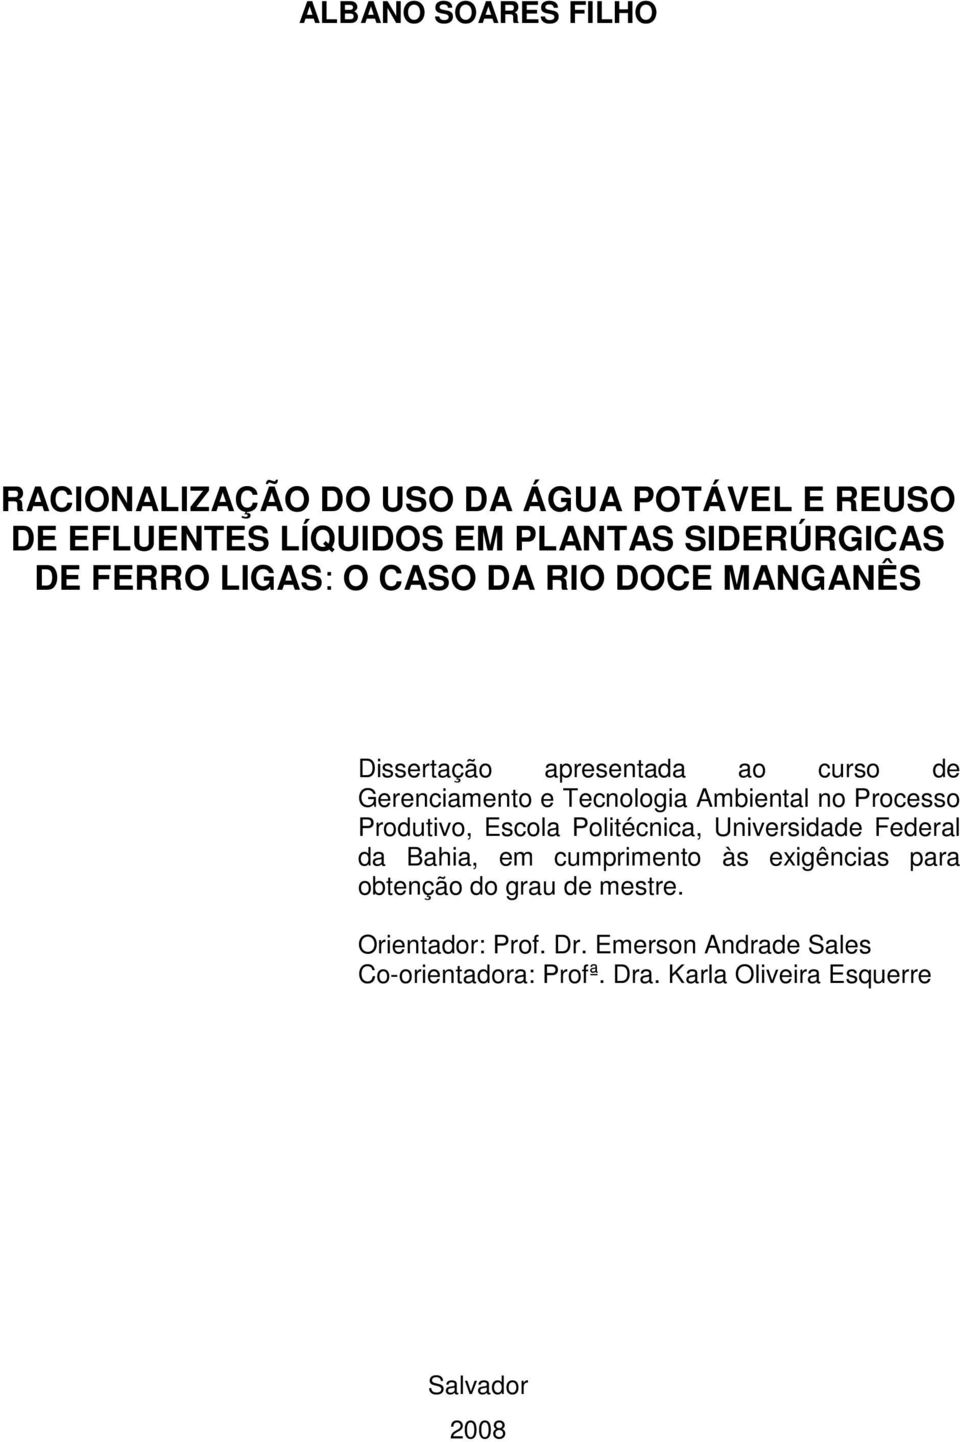 Processo Produtivo, Escola Politécnica, Universidade Federal da Bahia, em cumprimento às exigências para obtenção do